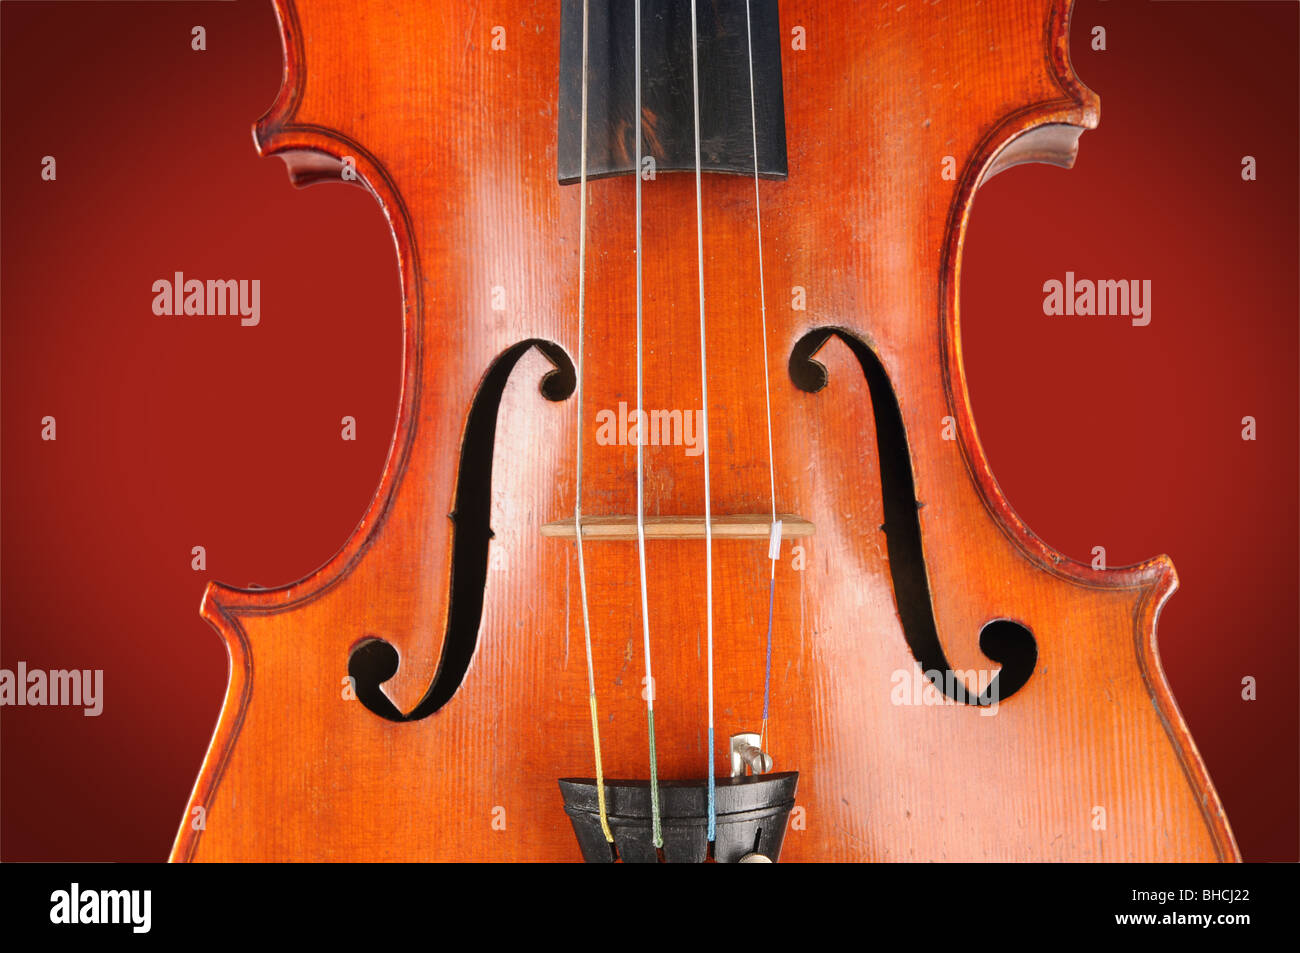 Mid section of vintage violon en vue rapprochée Banque D'Images